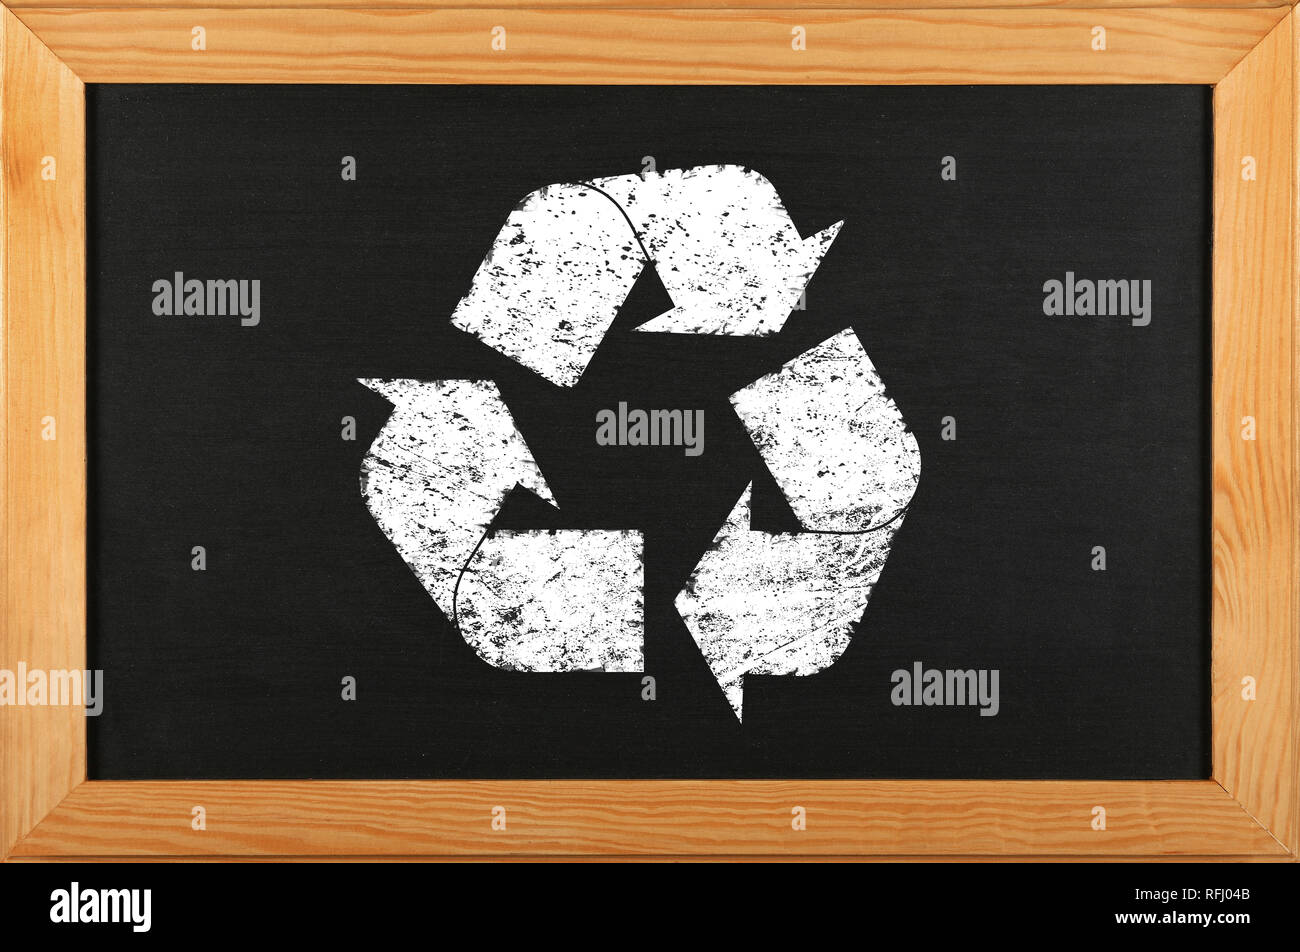 Tableau noir tableau de l'école noire avec dessin à la craie d'icône logo de recyclage dans le cadre en bois brun Banque D'Images